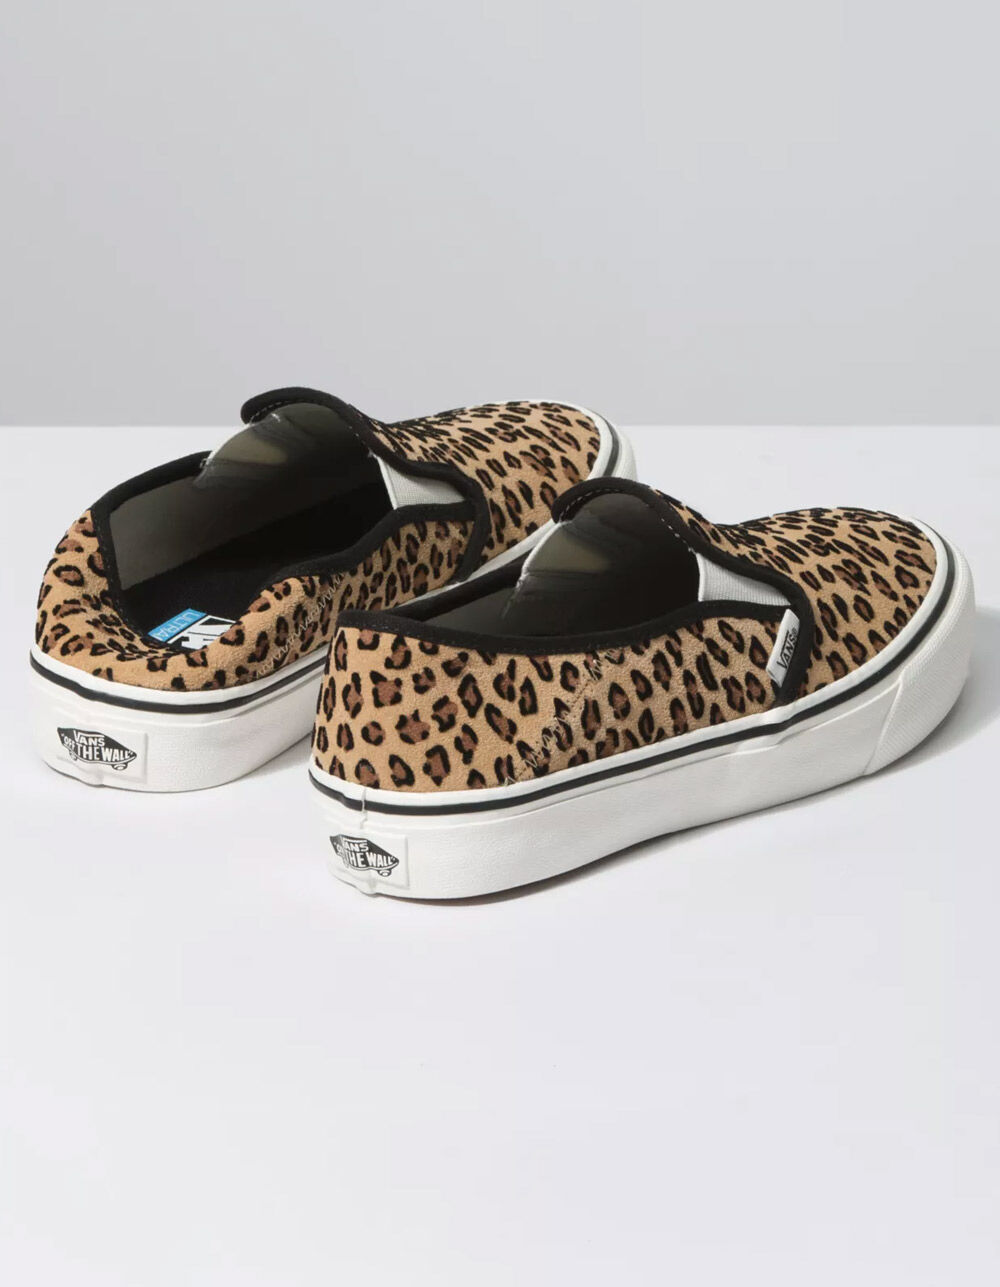 VANS Leopard Slip-On SF Womens Shoes - LEOPA - 358707435 صانعة الوافل